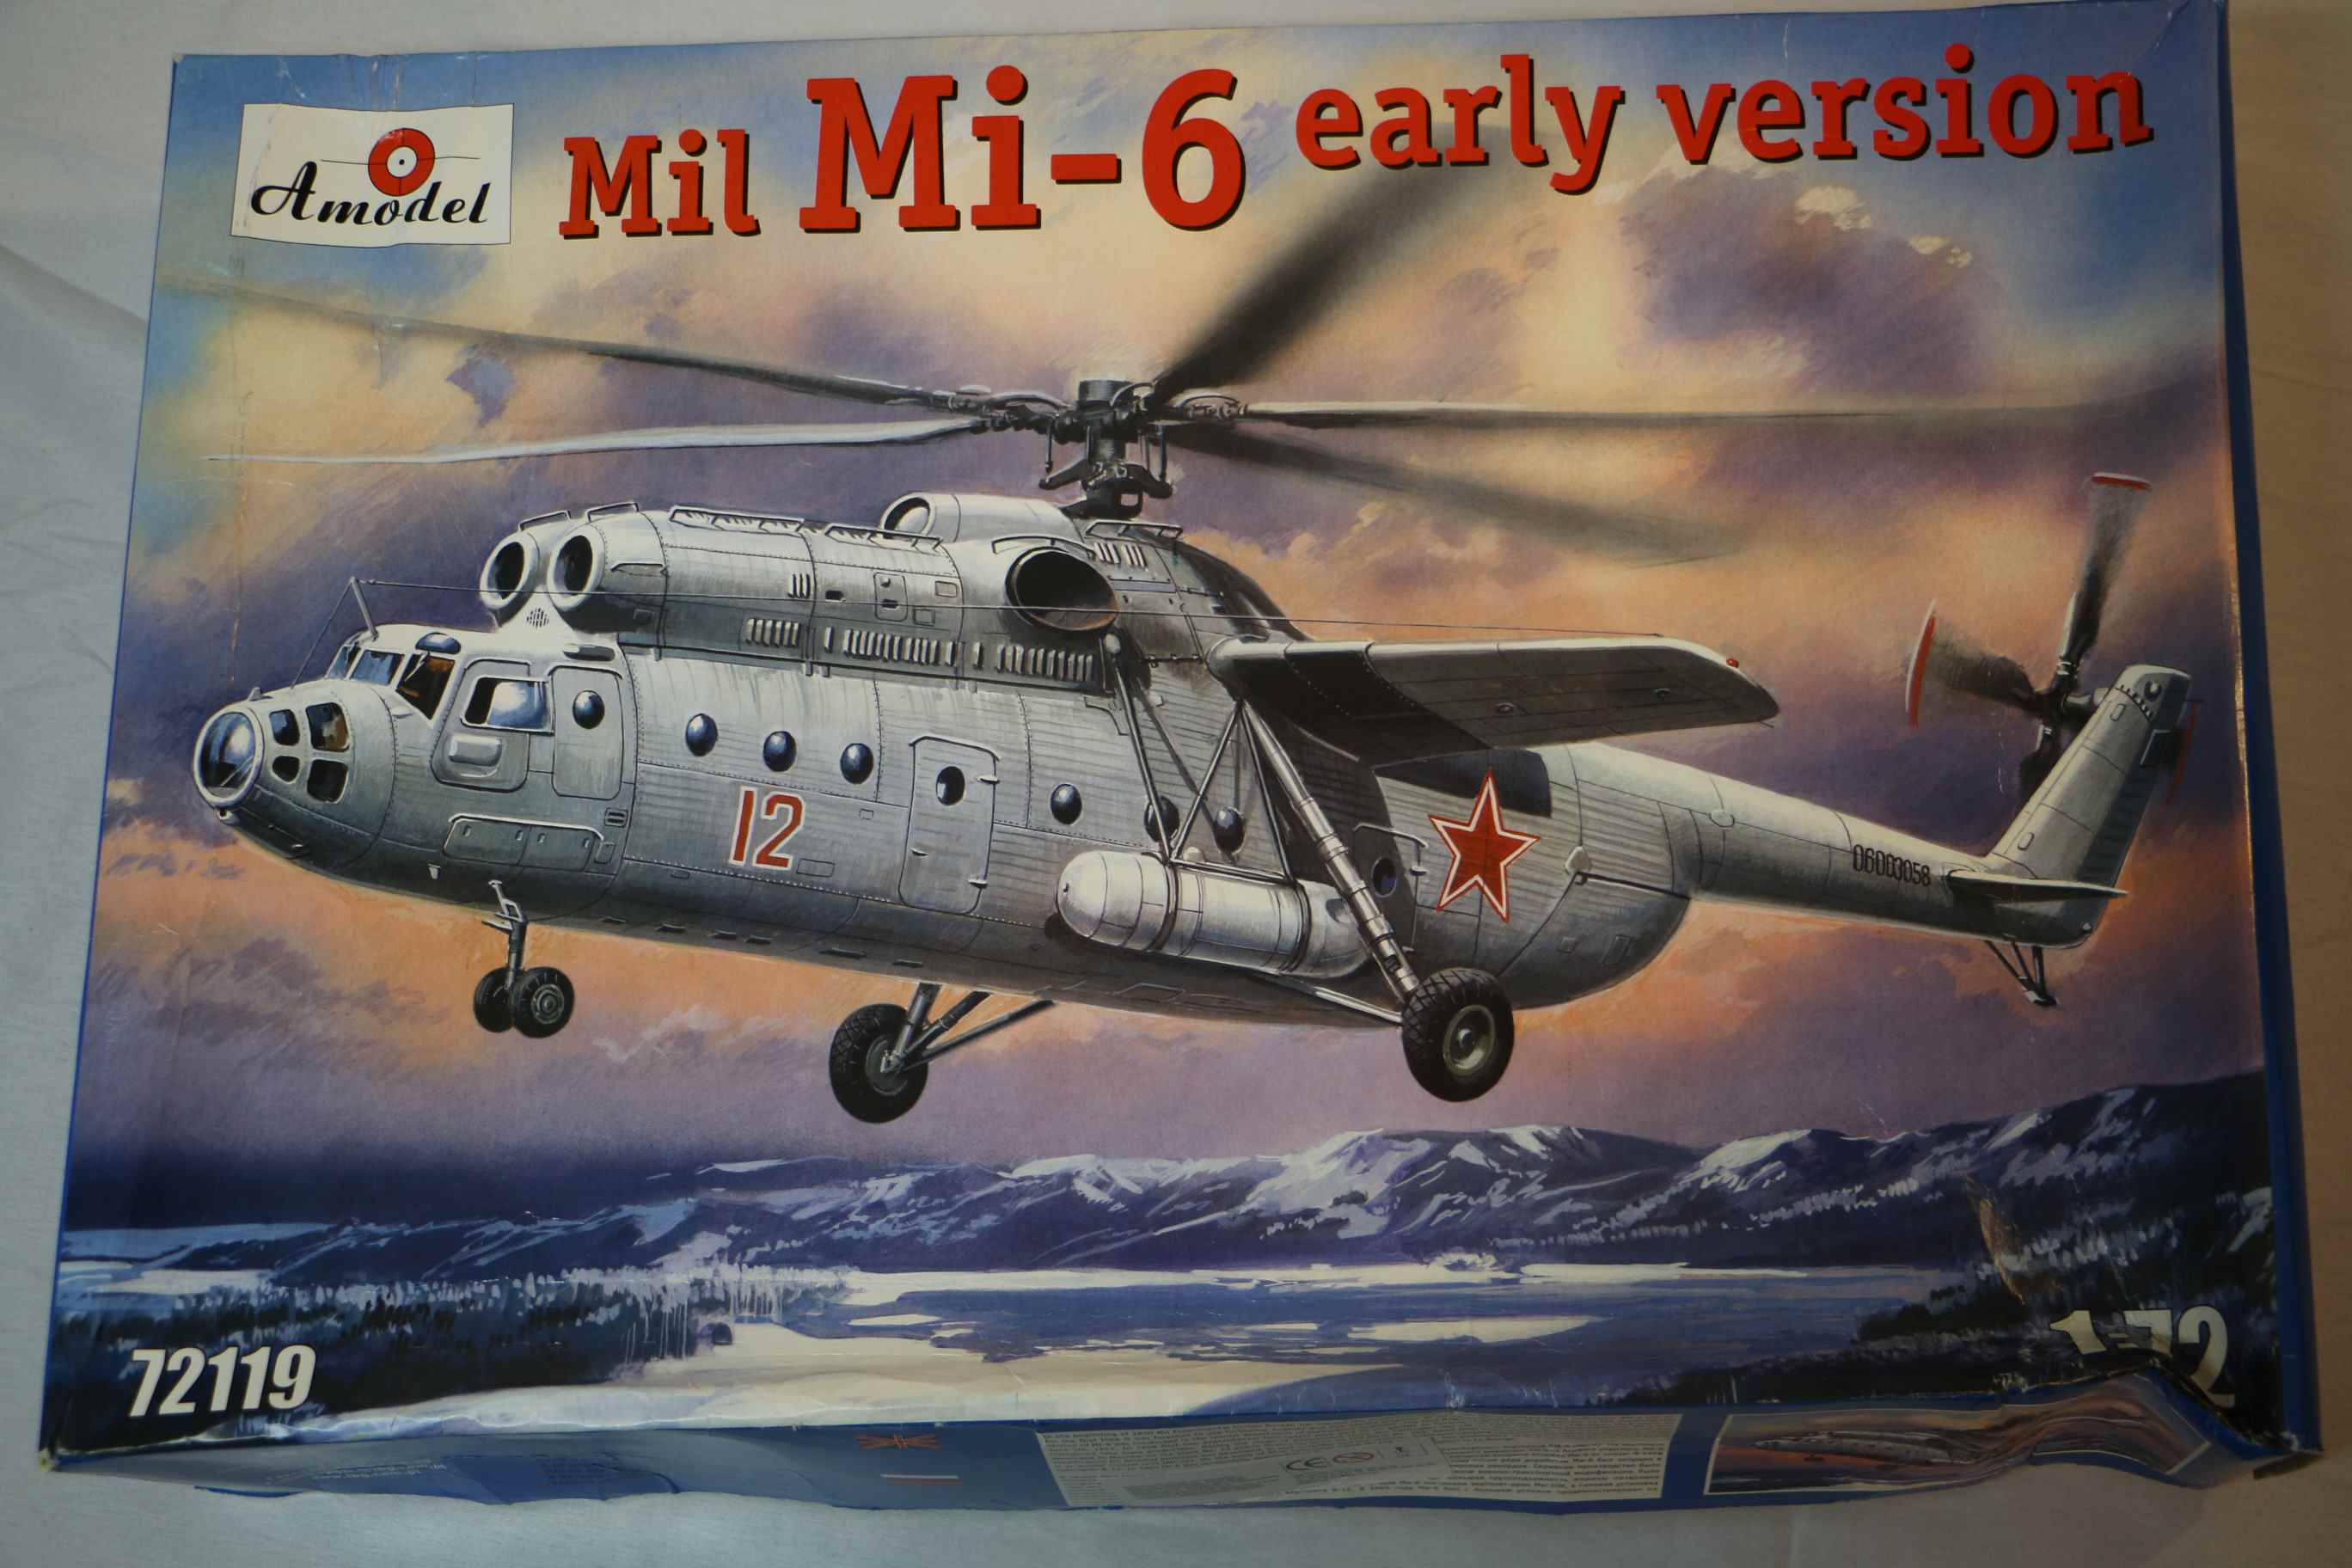 AMU72119 - Amodel 1/72 Mi-6 early version